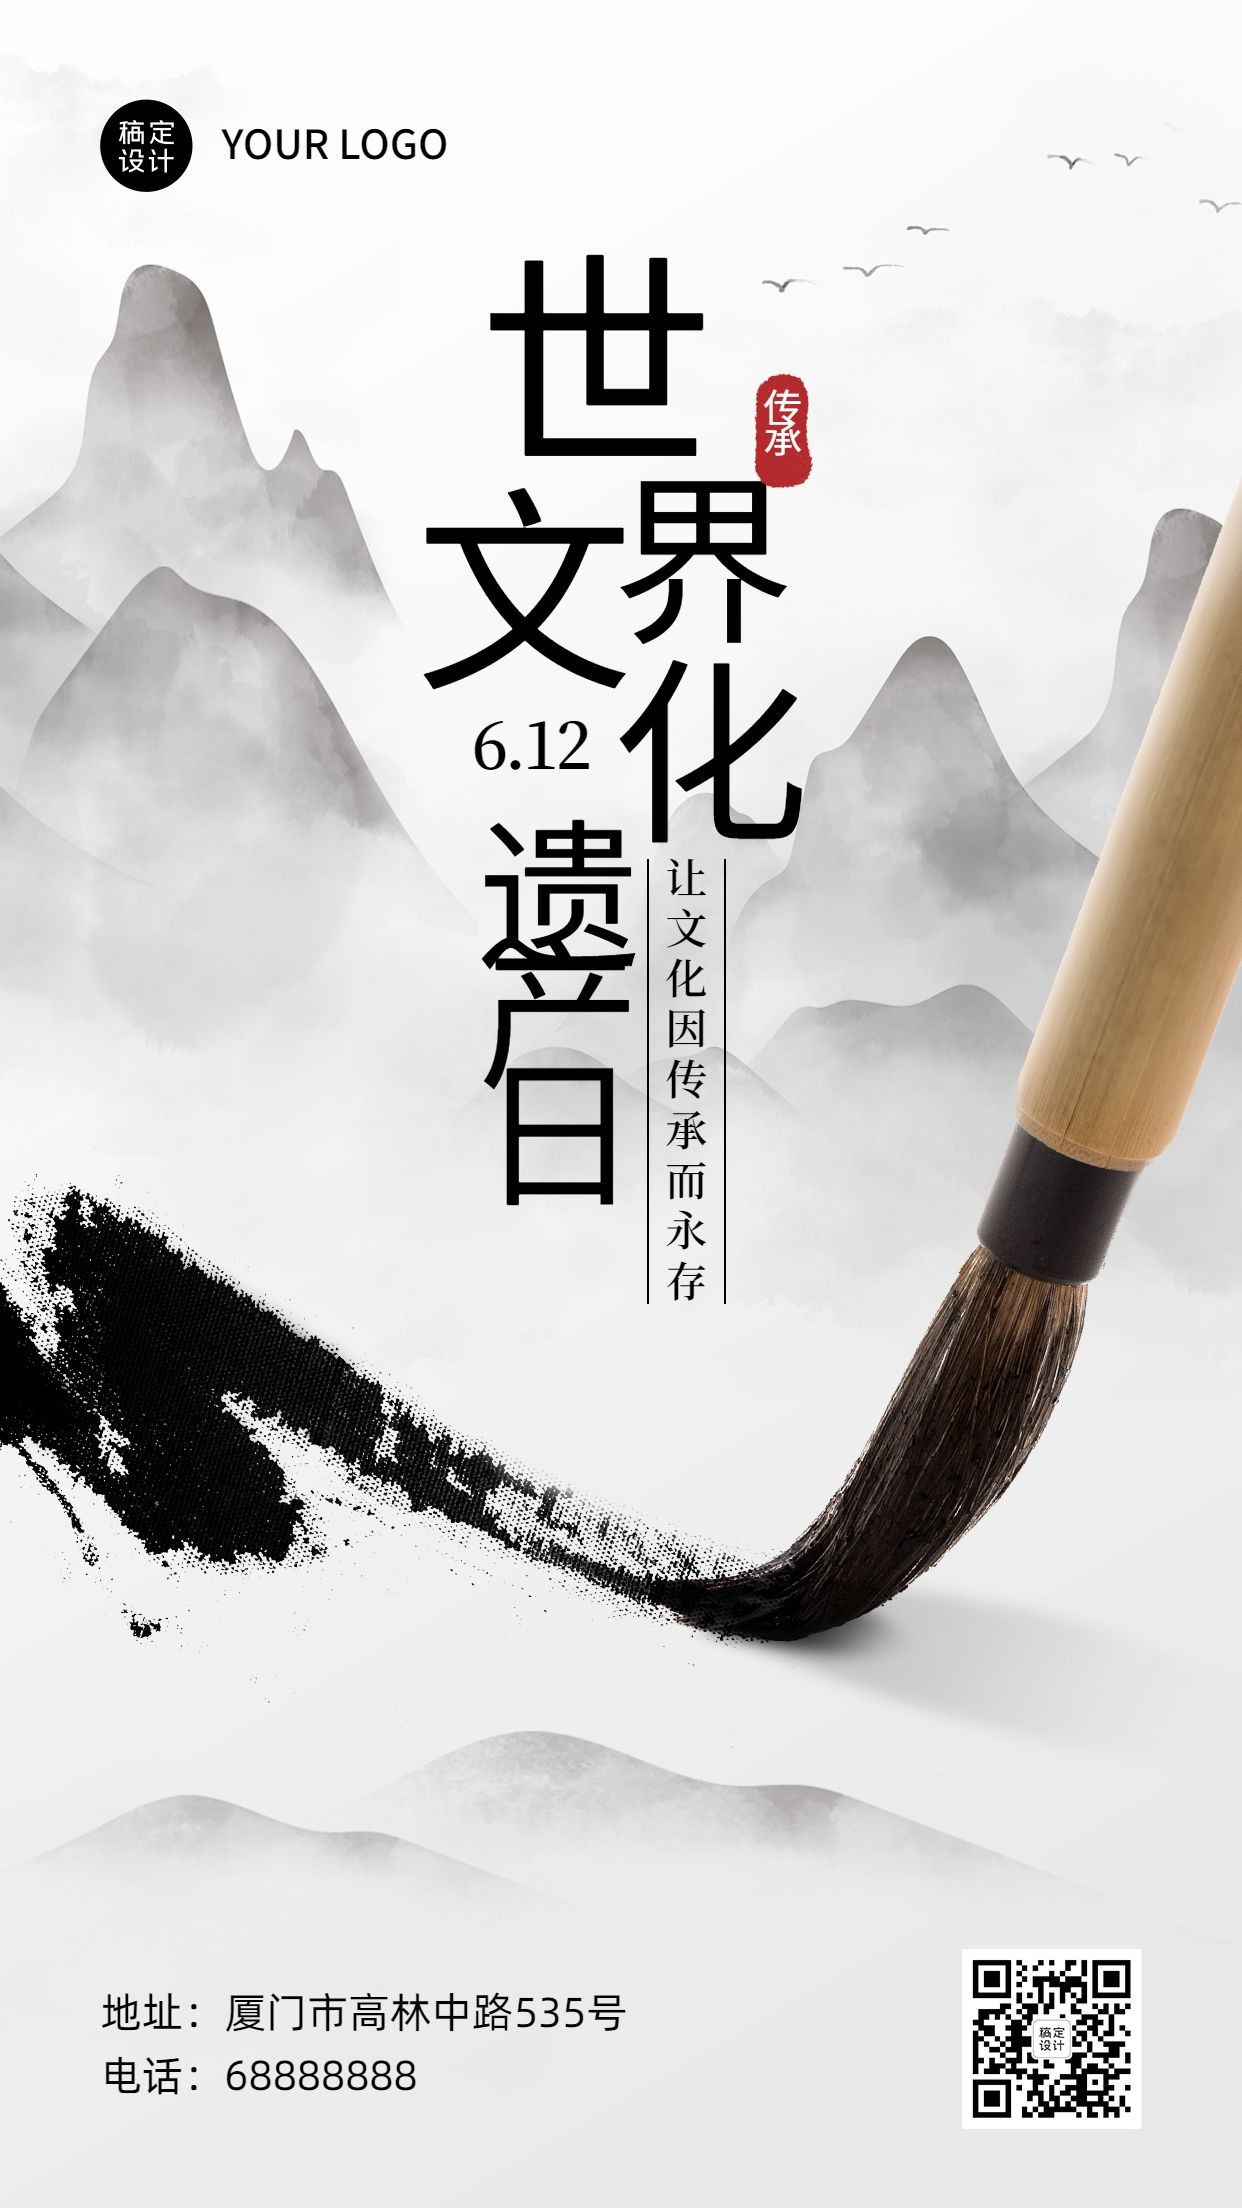 世界中国文化遗产日宣传中国风水墨画手机海报